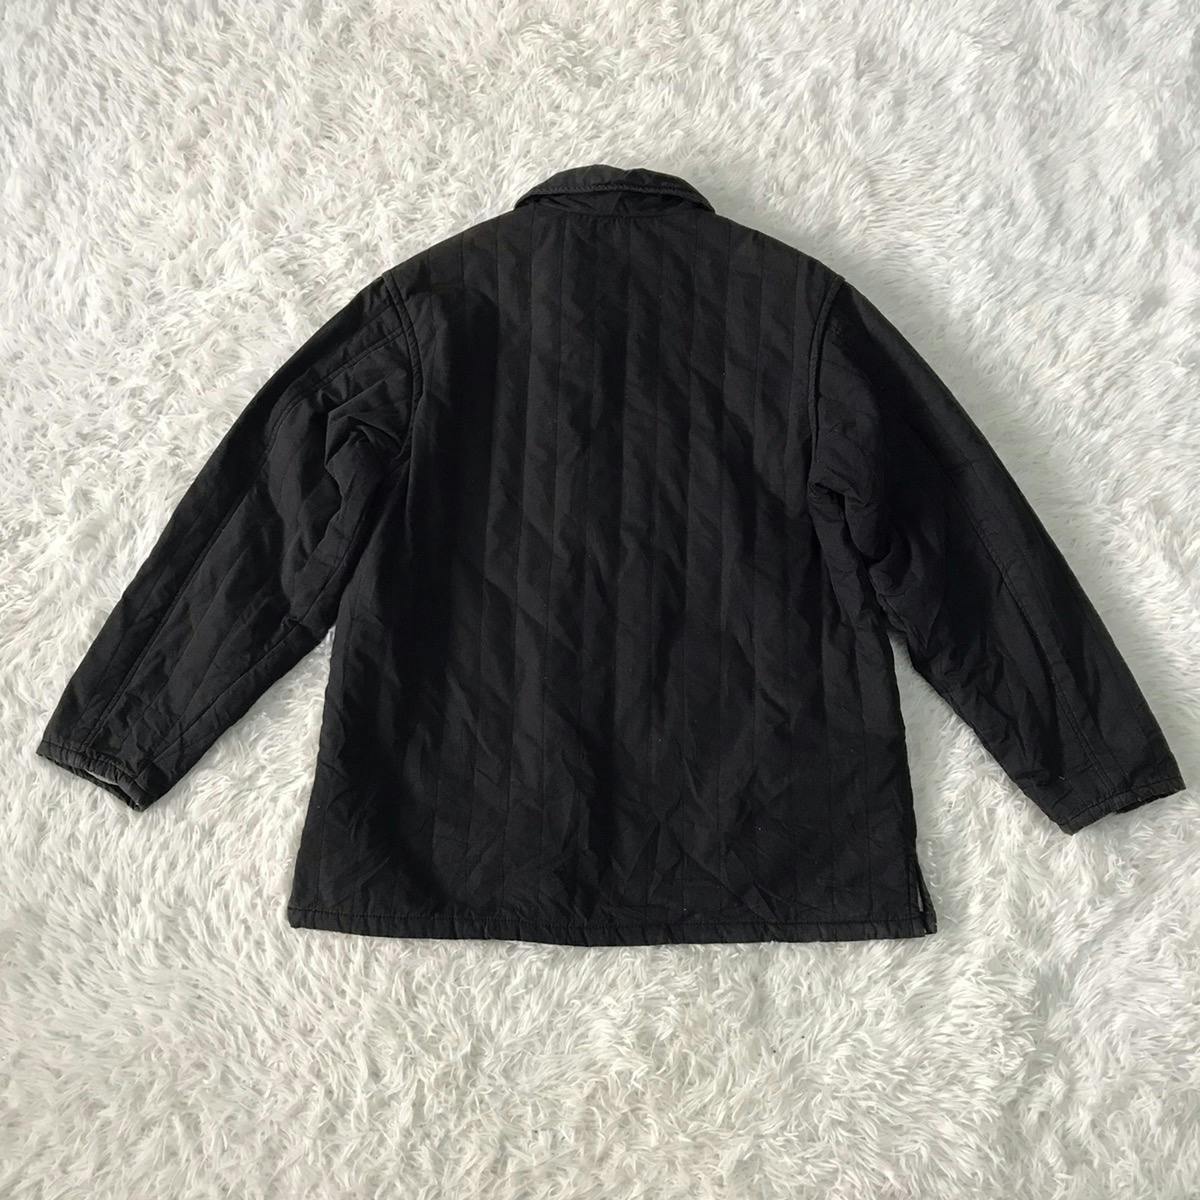 Kenzo enfant jacket size on tag 150 - 2